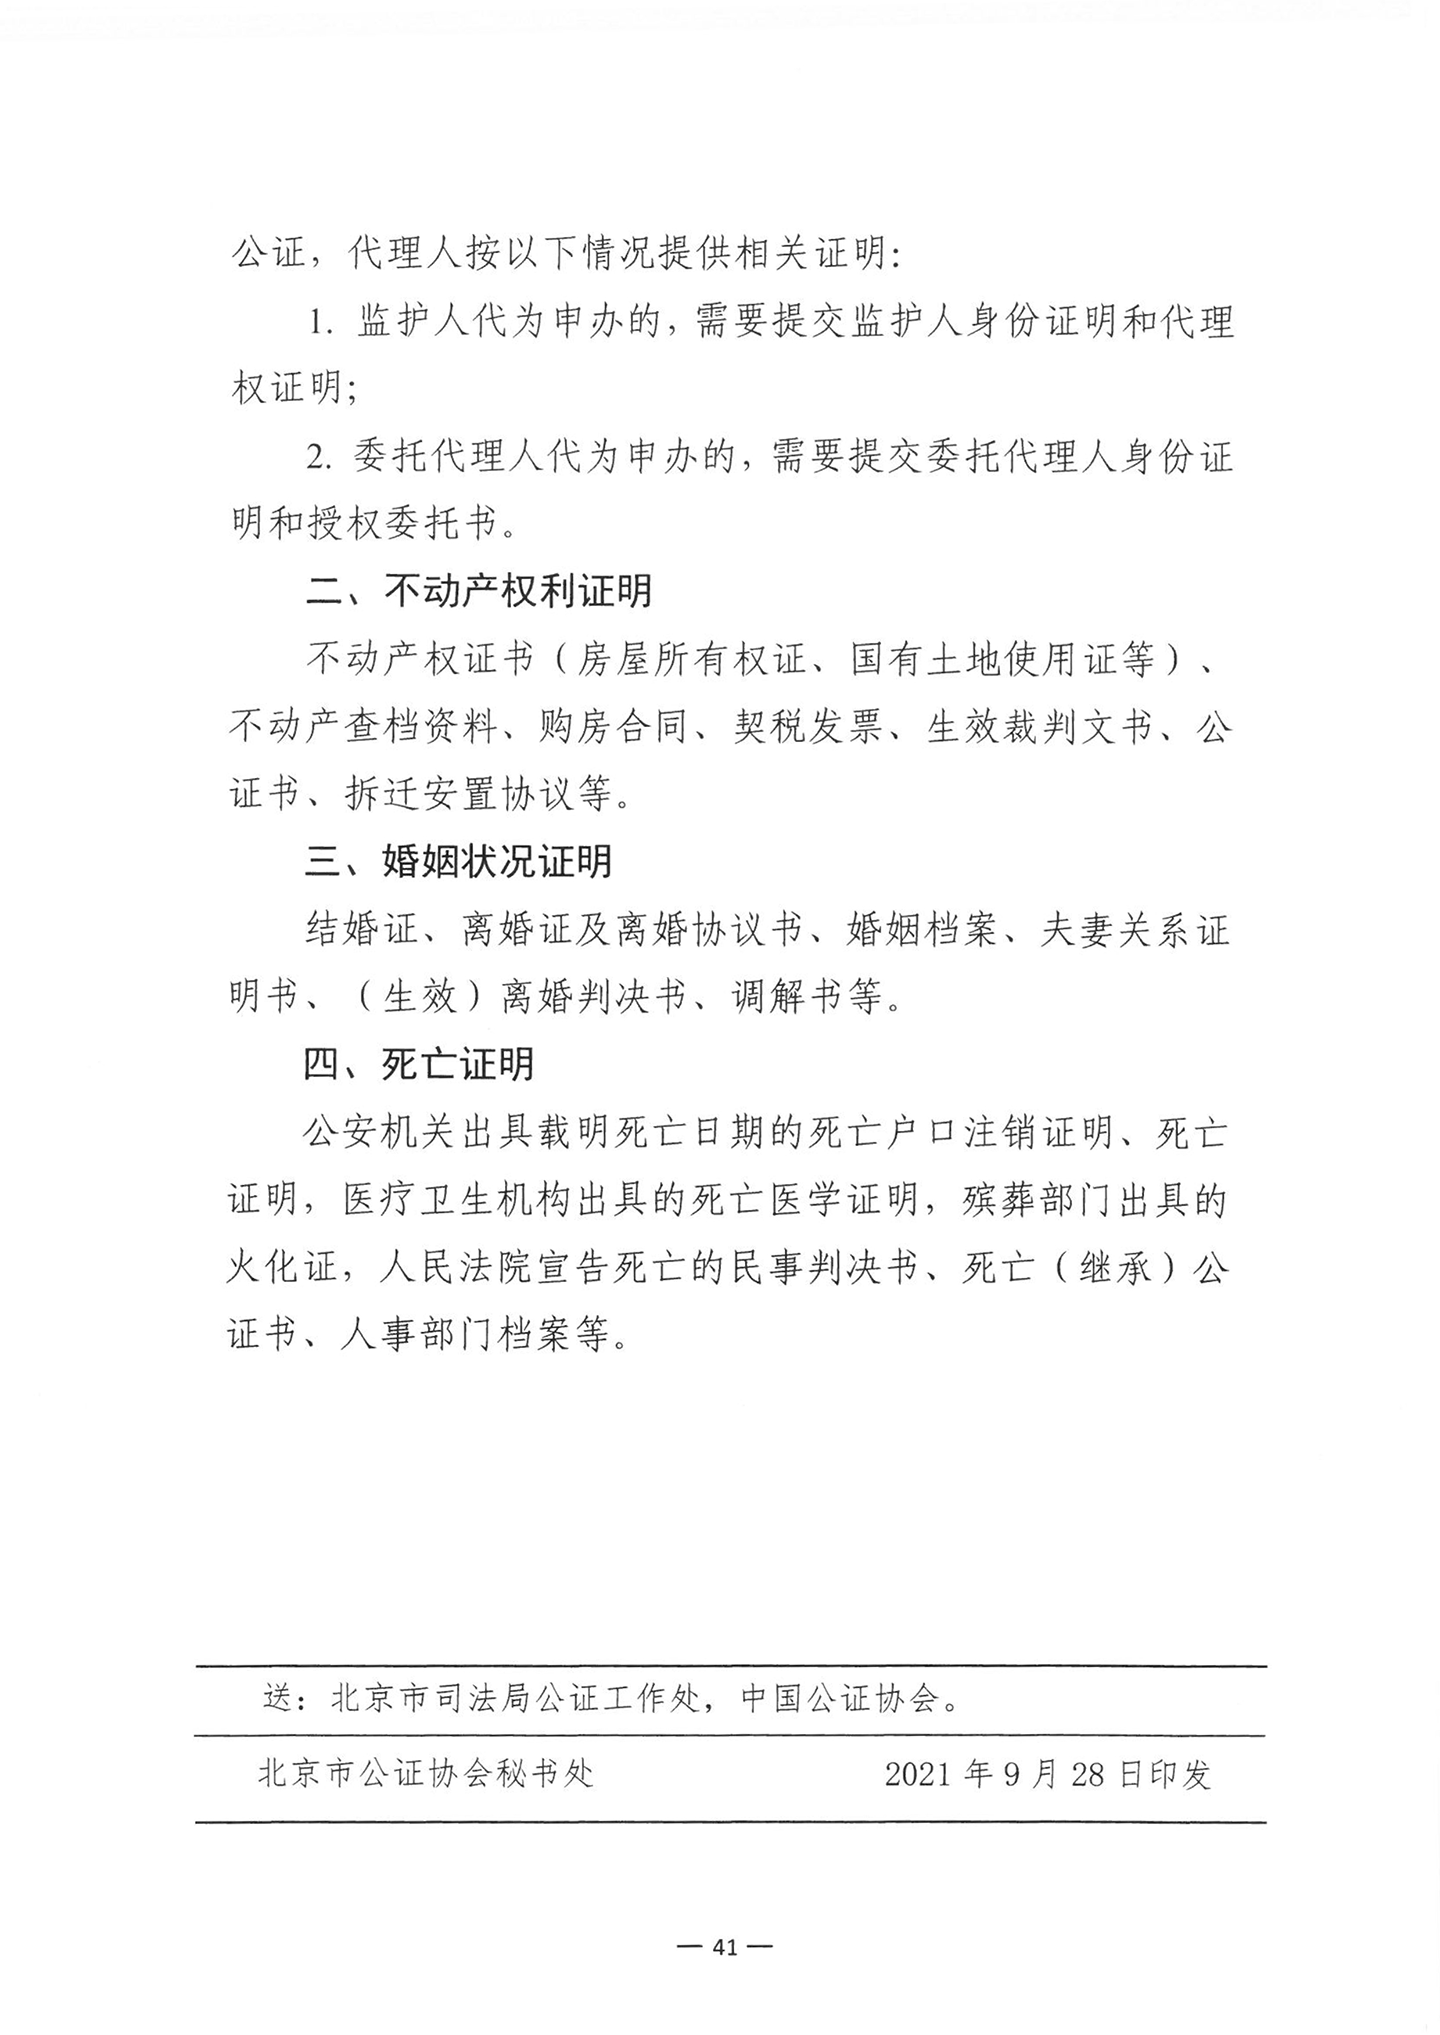 010417243466_03北京市公证协会关于印发《公证机构受理公证事项事务申请证明材料清单》的通知_43